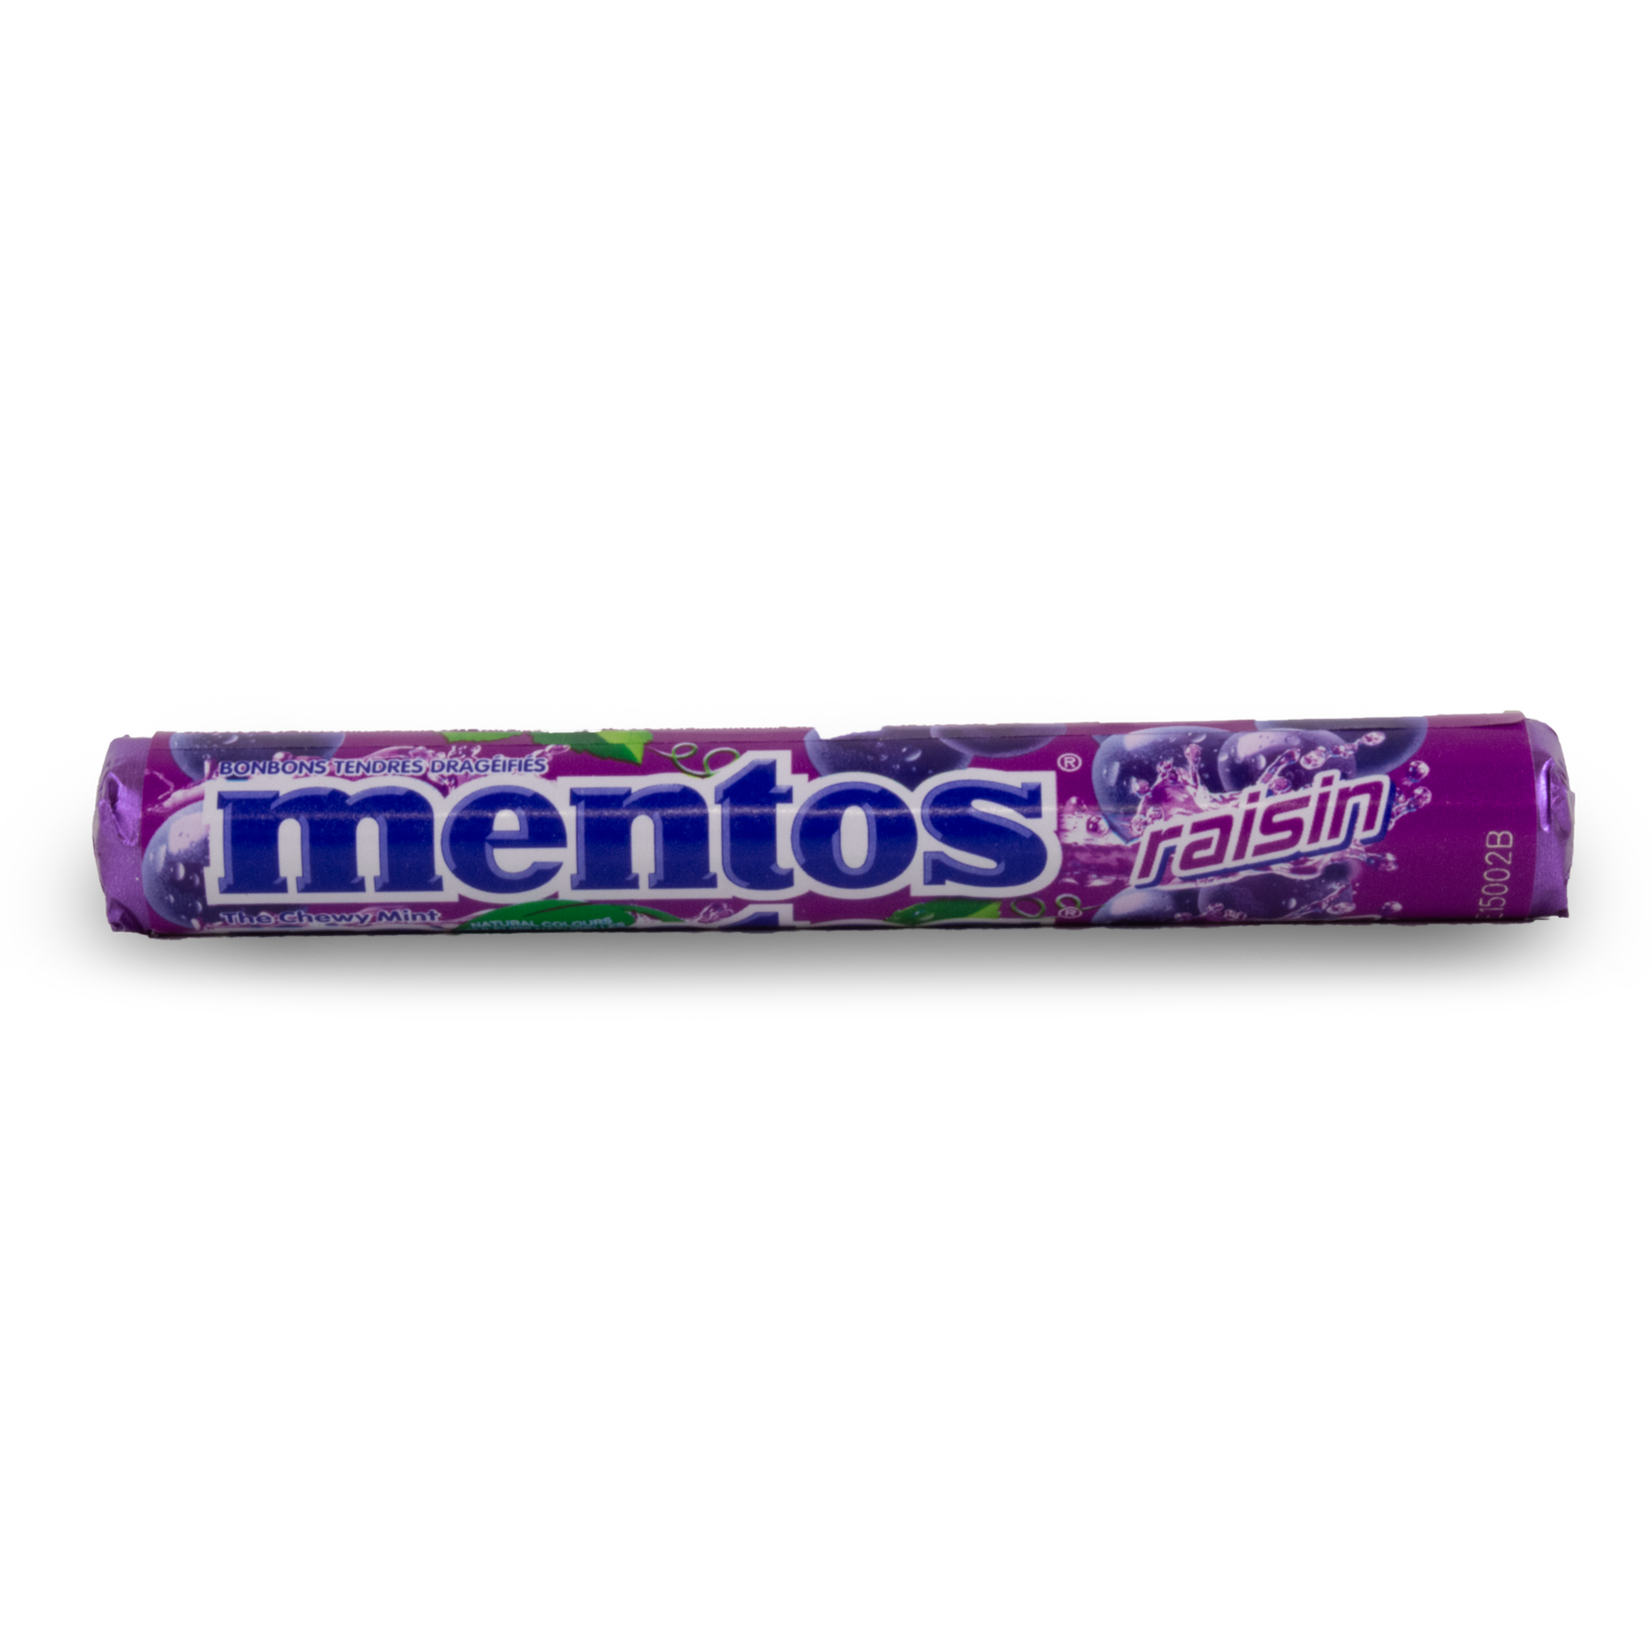 Mentos Mentos Grape Roll 38g